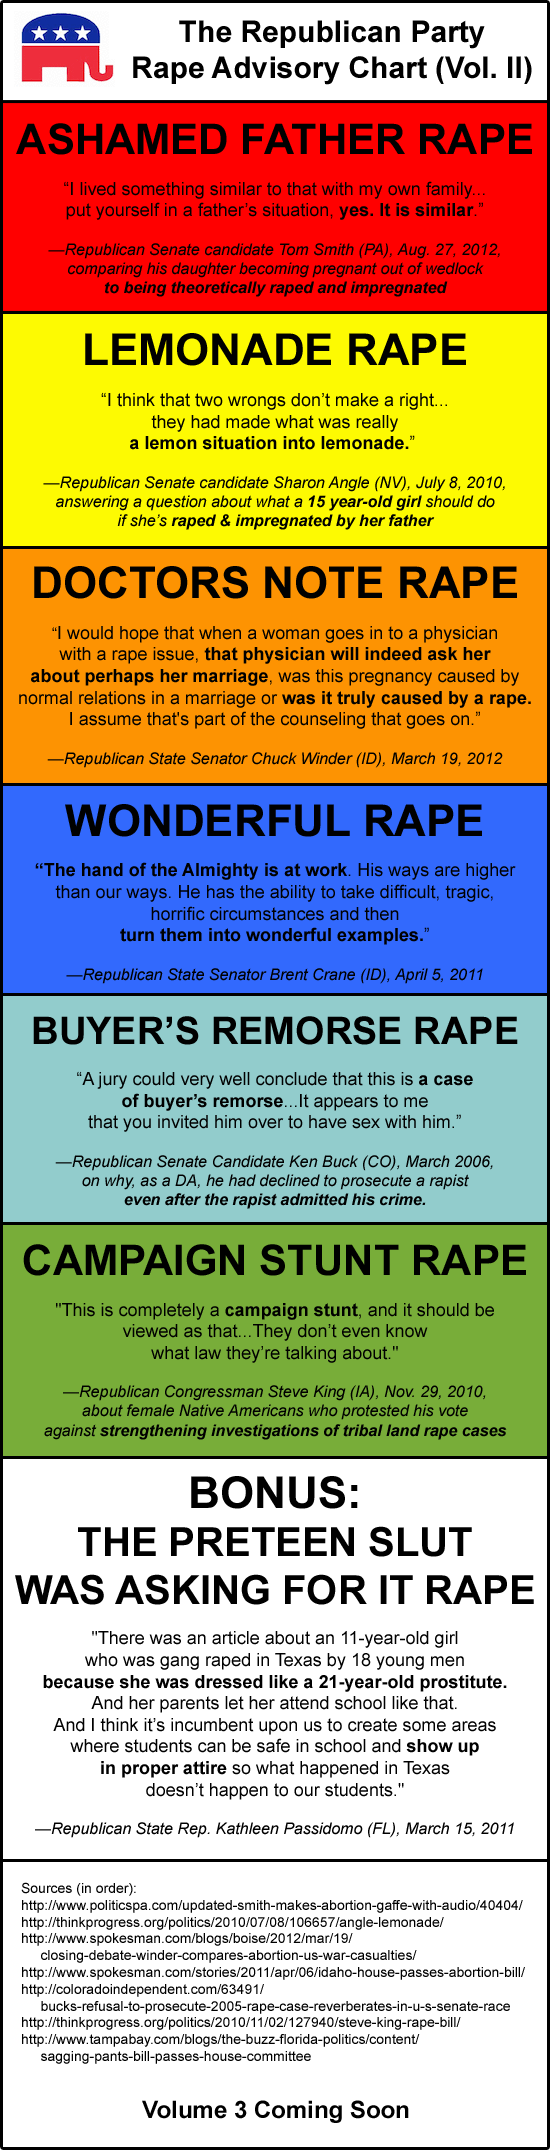 GOP Rape Advisory Chart: Vol. 2